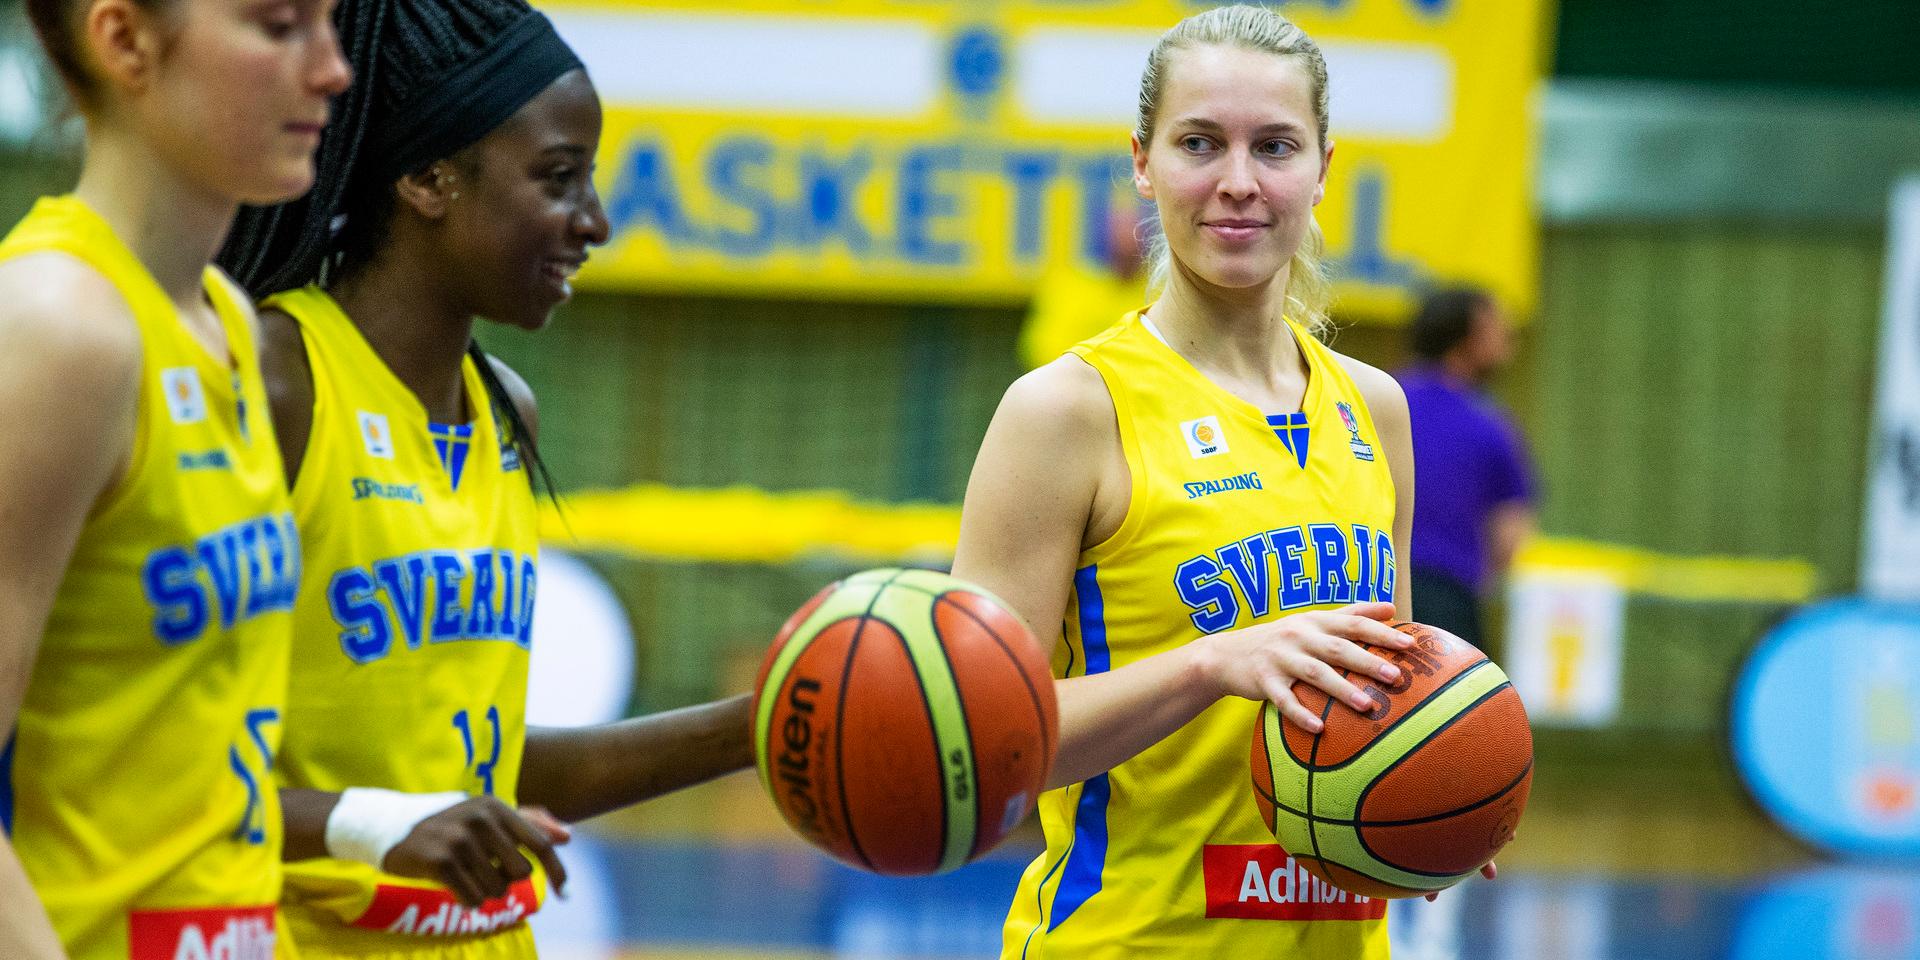 Ellen Nyström, höger, är mest erfaren i landslaget. Arkivbild.